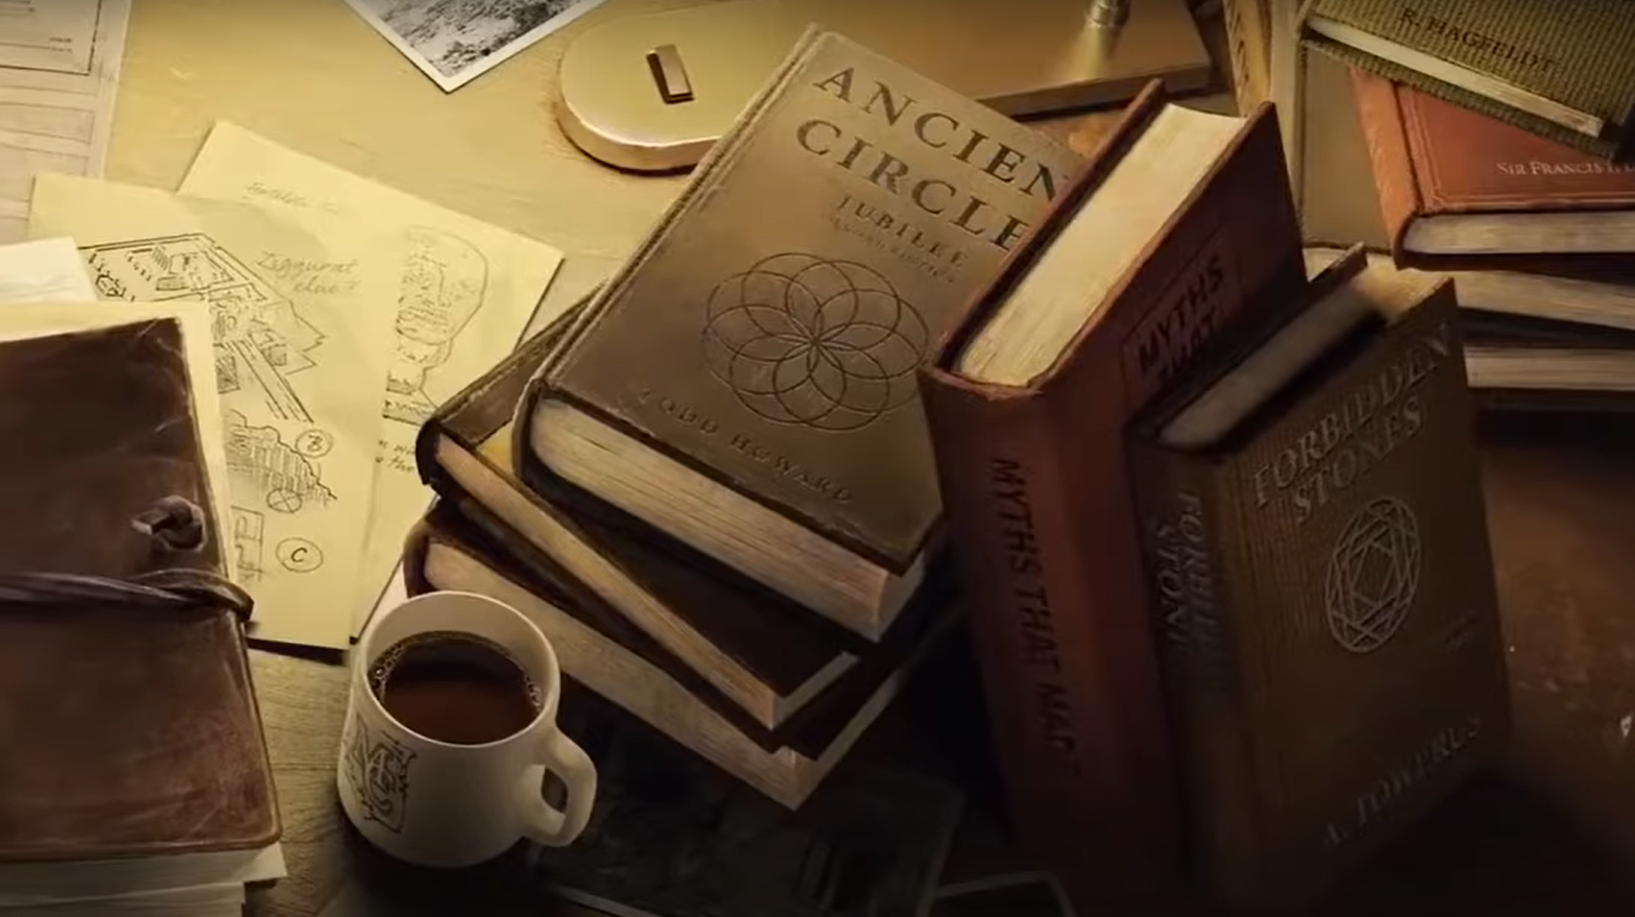 Screenshot tratto dal trailer di anteprima di Indiana Jones di MachineGames, mostra un libro intitolato Ancient Circles